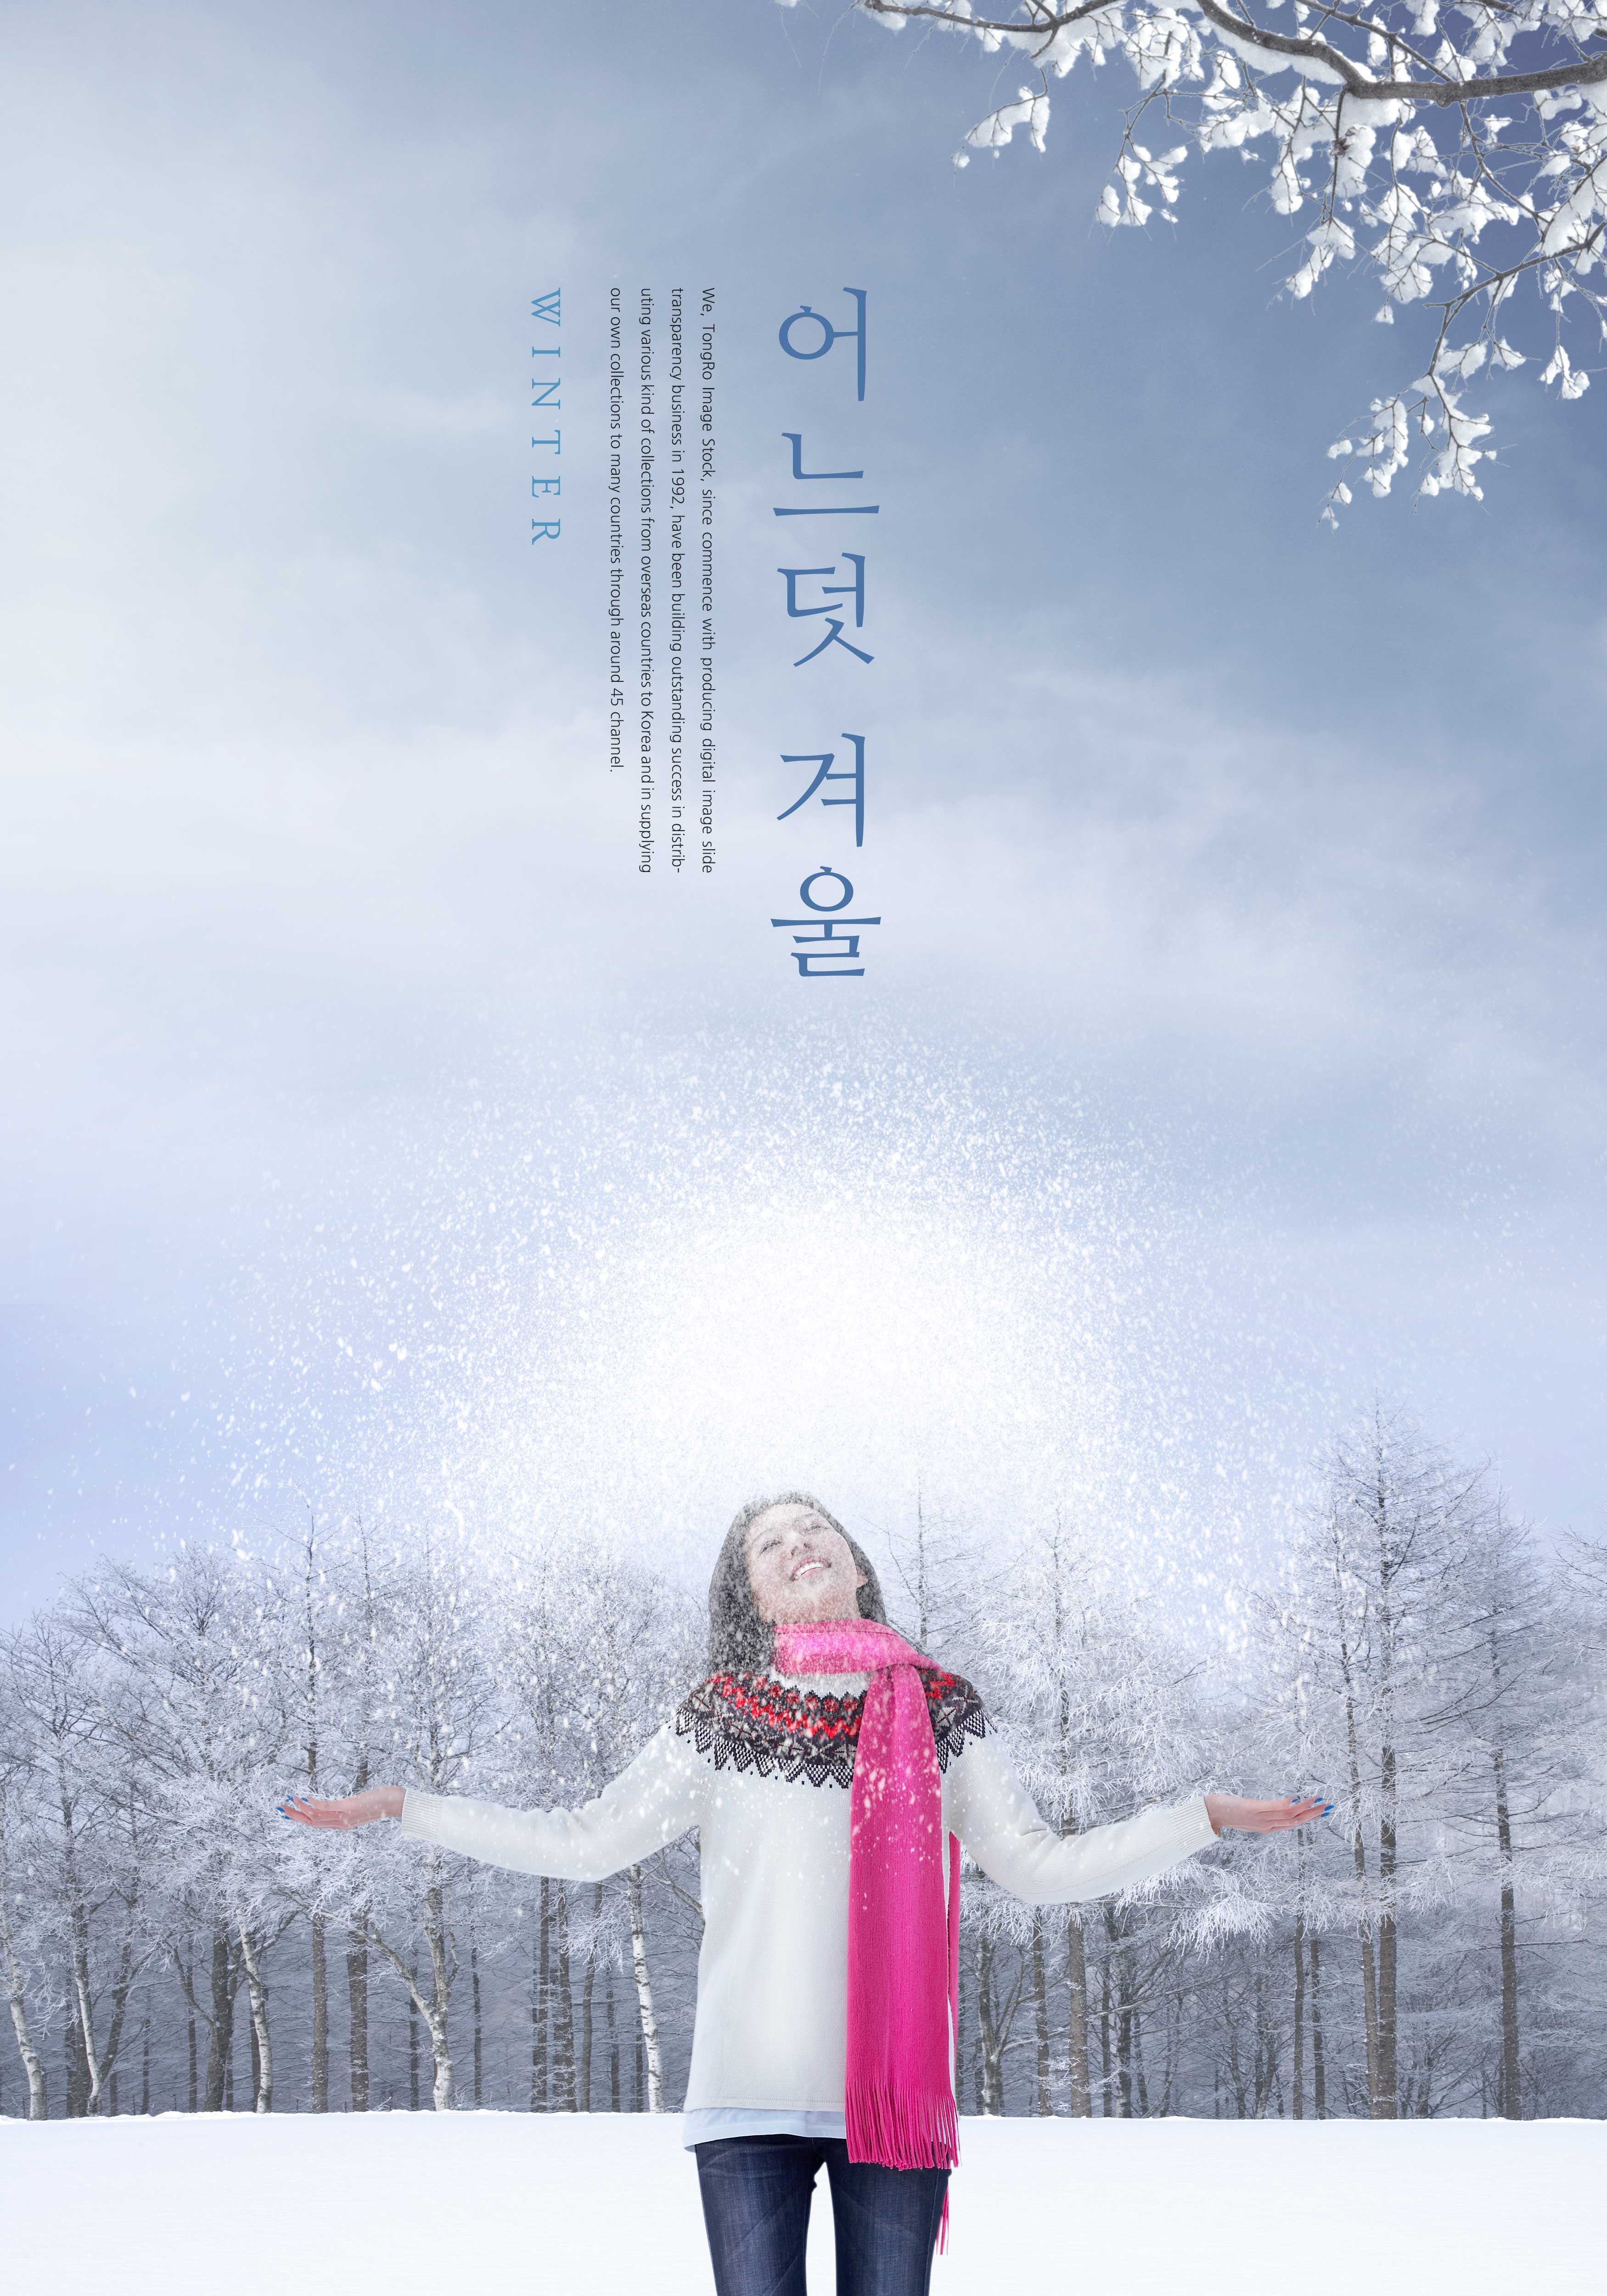 冬季白色雪景主题海报设计韩国素材[PSD]设计素材模板